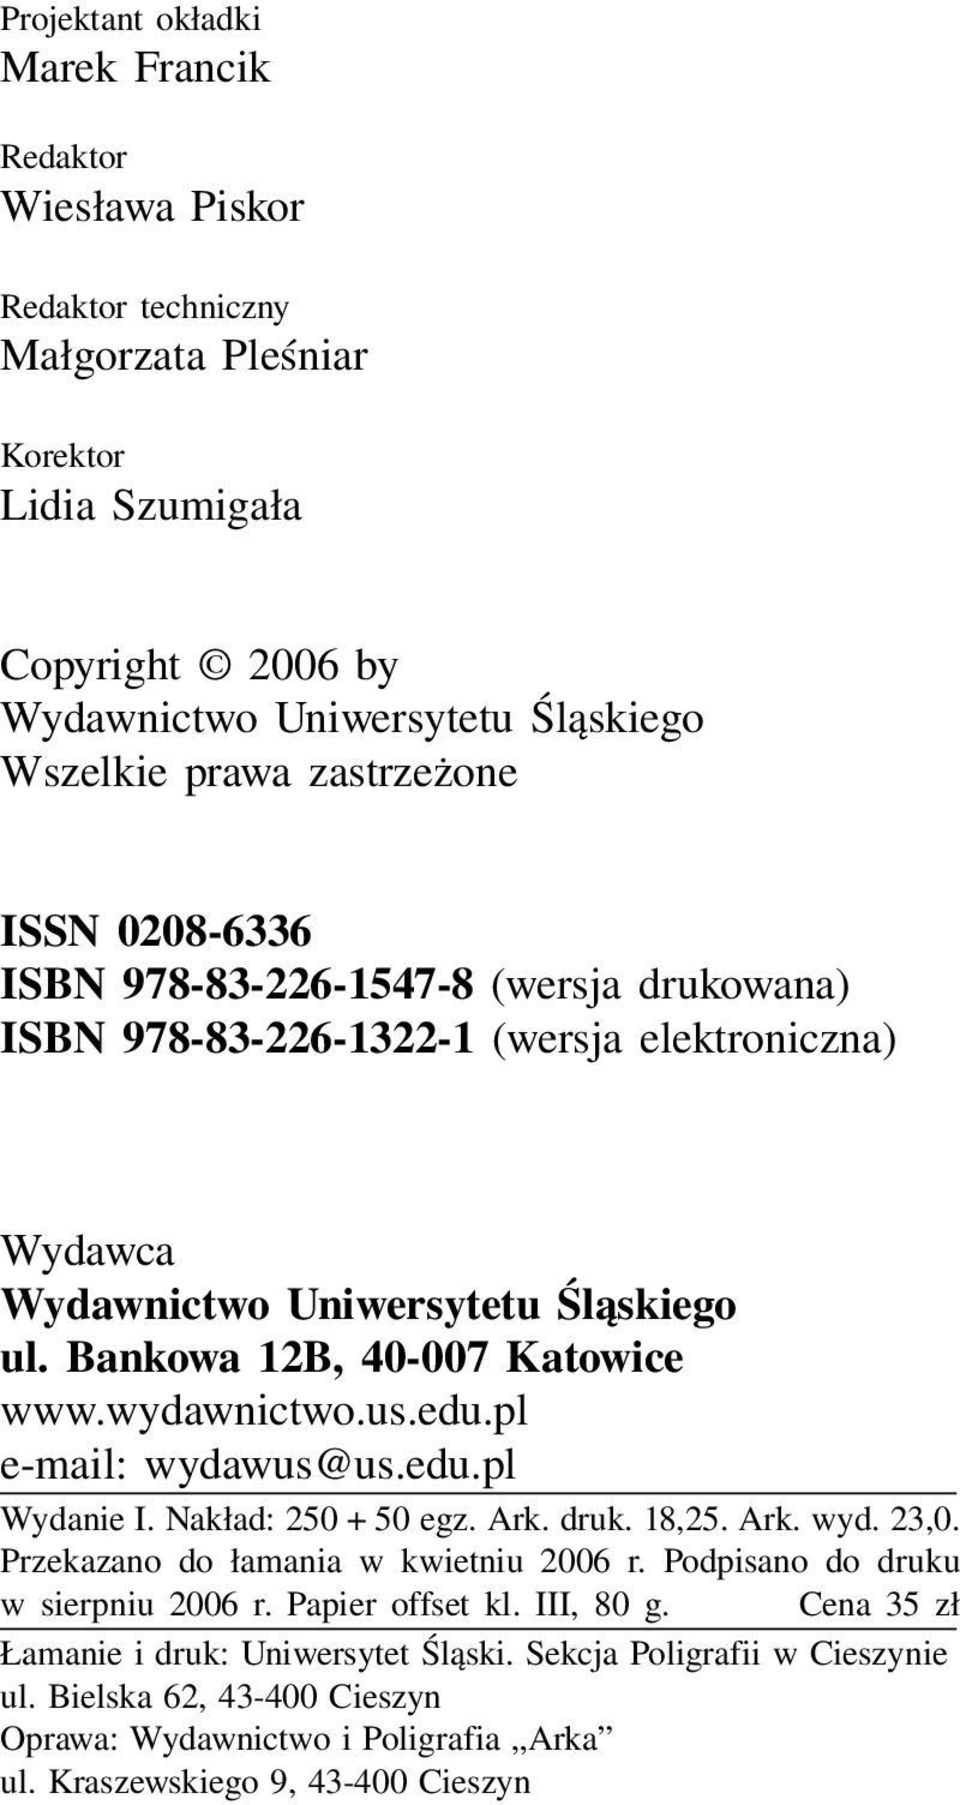 wydawnictwo.us.edu.pl e-mail: wydawus@us.edu.pl Wydanie I. Nakład: 250 + 50 egz. Ark. druk. 18,25. Ark. wyd. 23,0. Przekazano do łamania w kwietniu 2006 r. Podpisano do druku w sierpniu 2006 r.